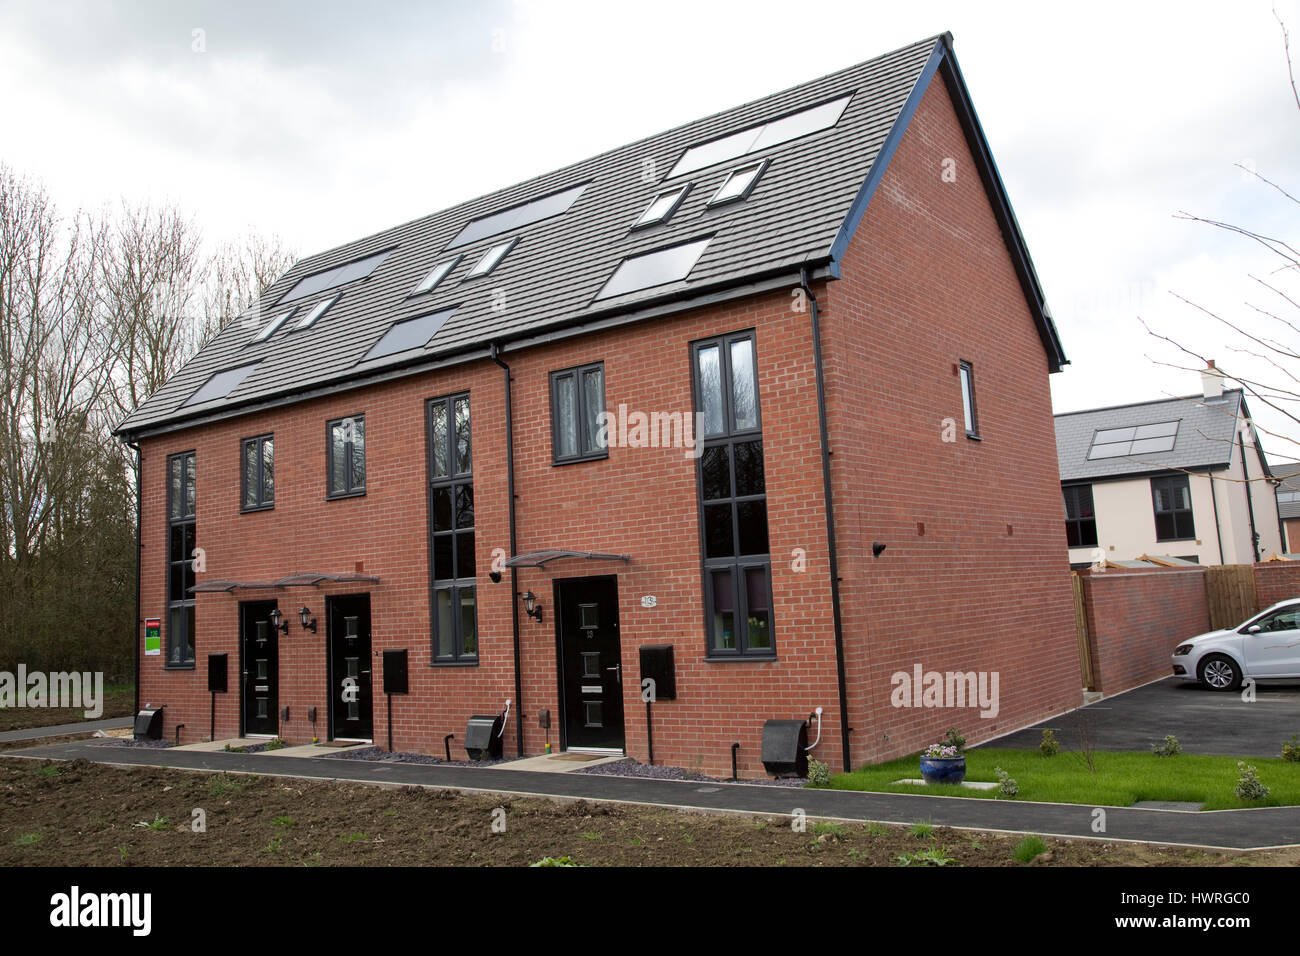 De nouvelles maisons en terrasse 2017 avec tous les panneaux solaires PV noir kaki greenacres bishops cleeve cheltenham uk Banque D'Images